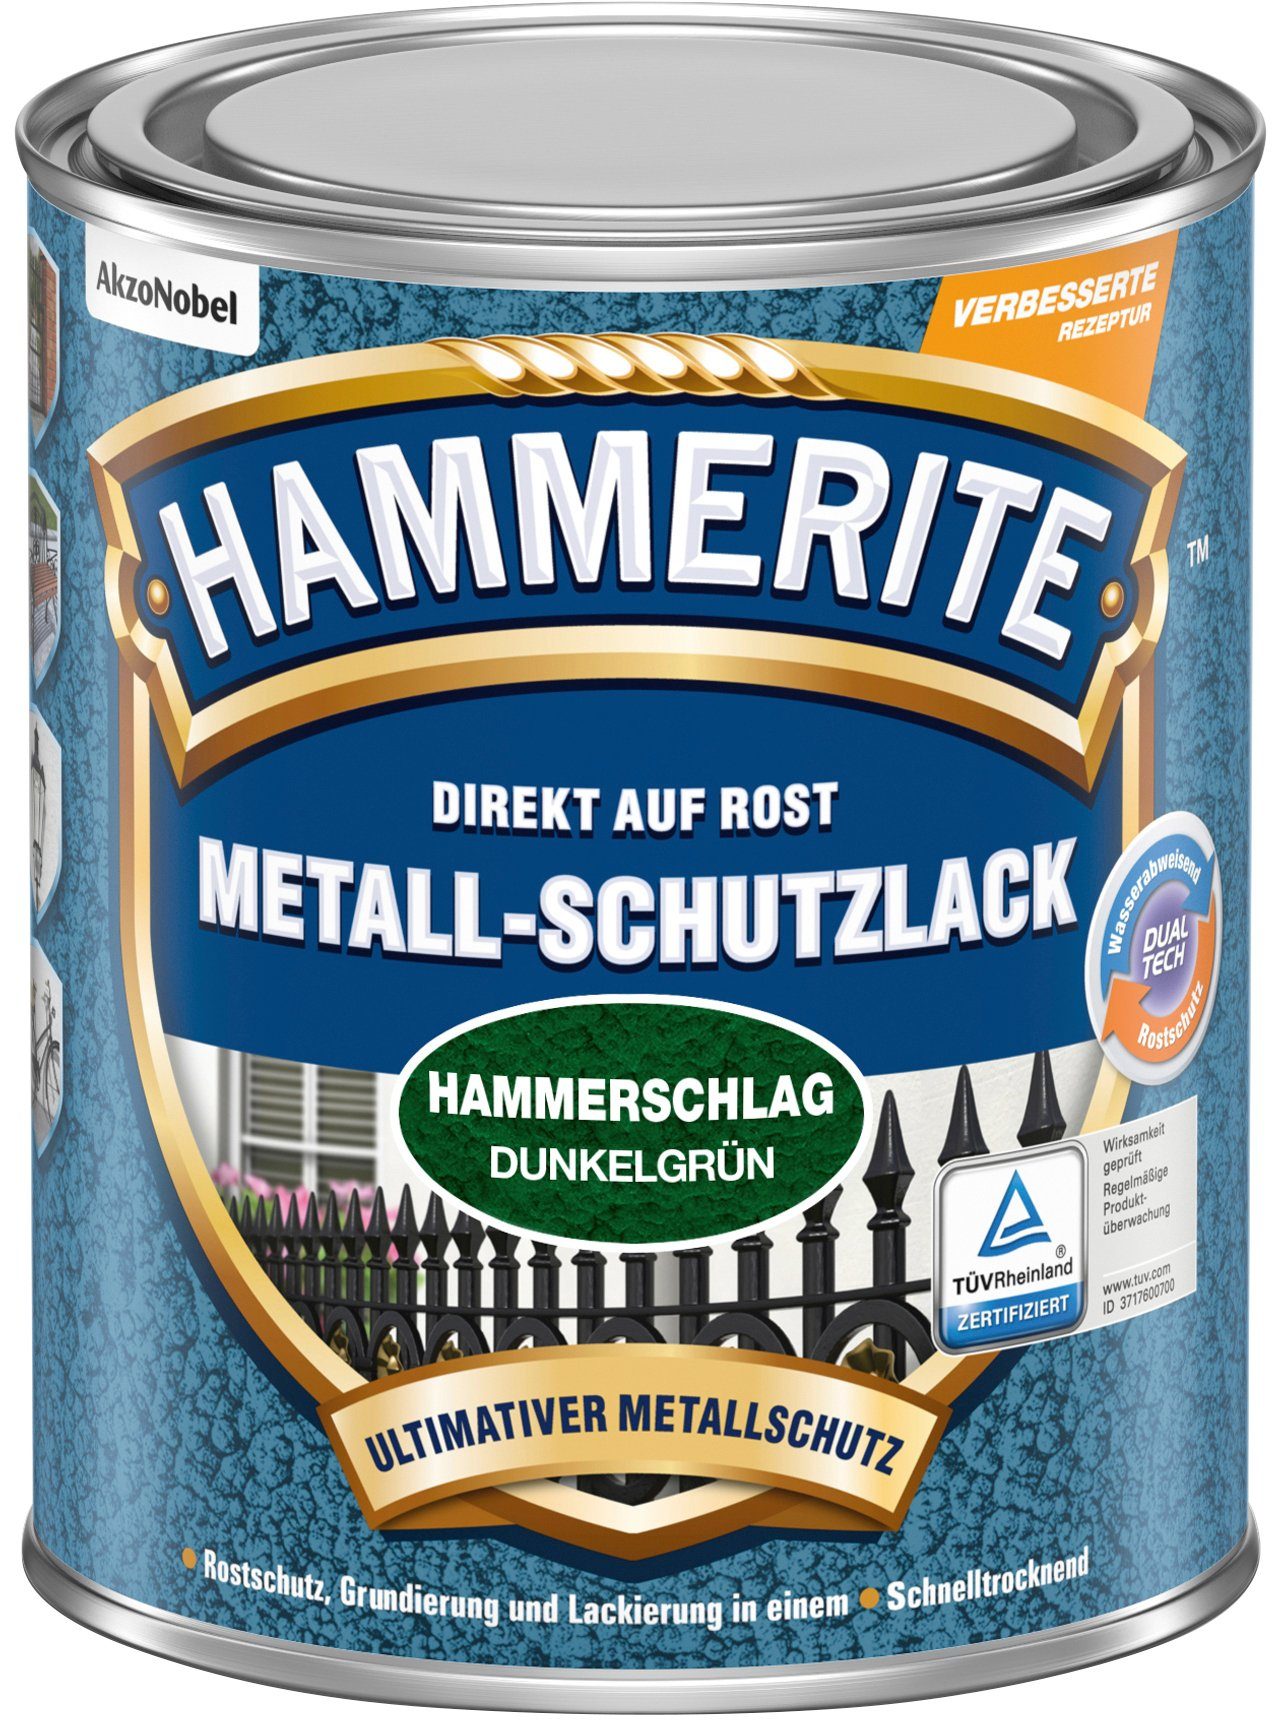 ROST, AUF Hammerschlag, Metallschutzlack 0,25 DIREKT Hammerite  Liter